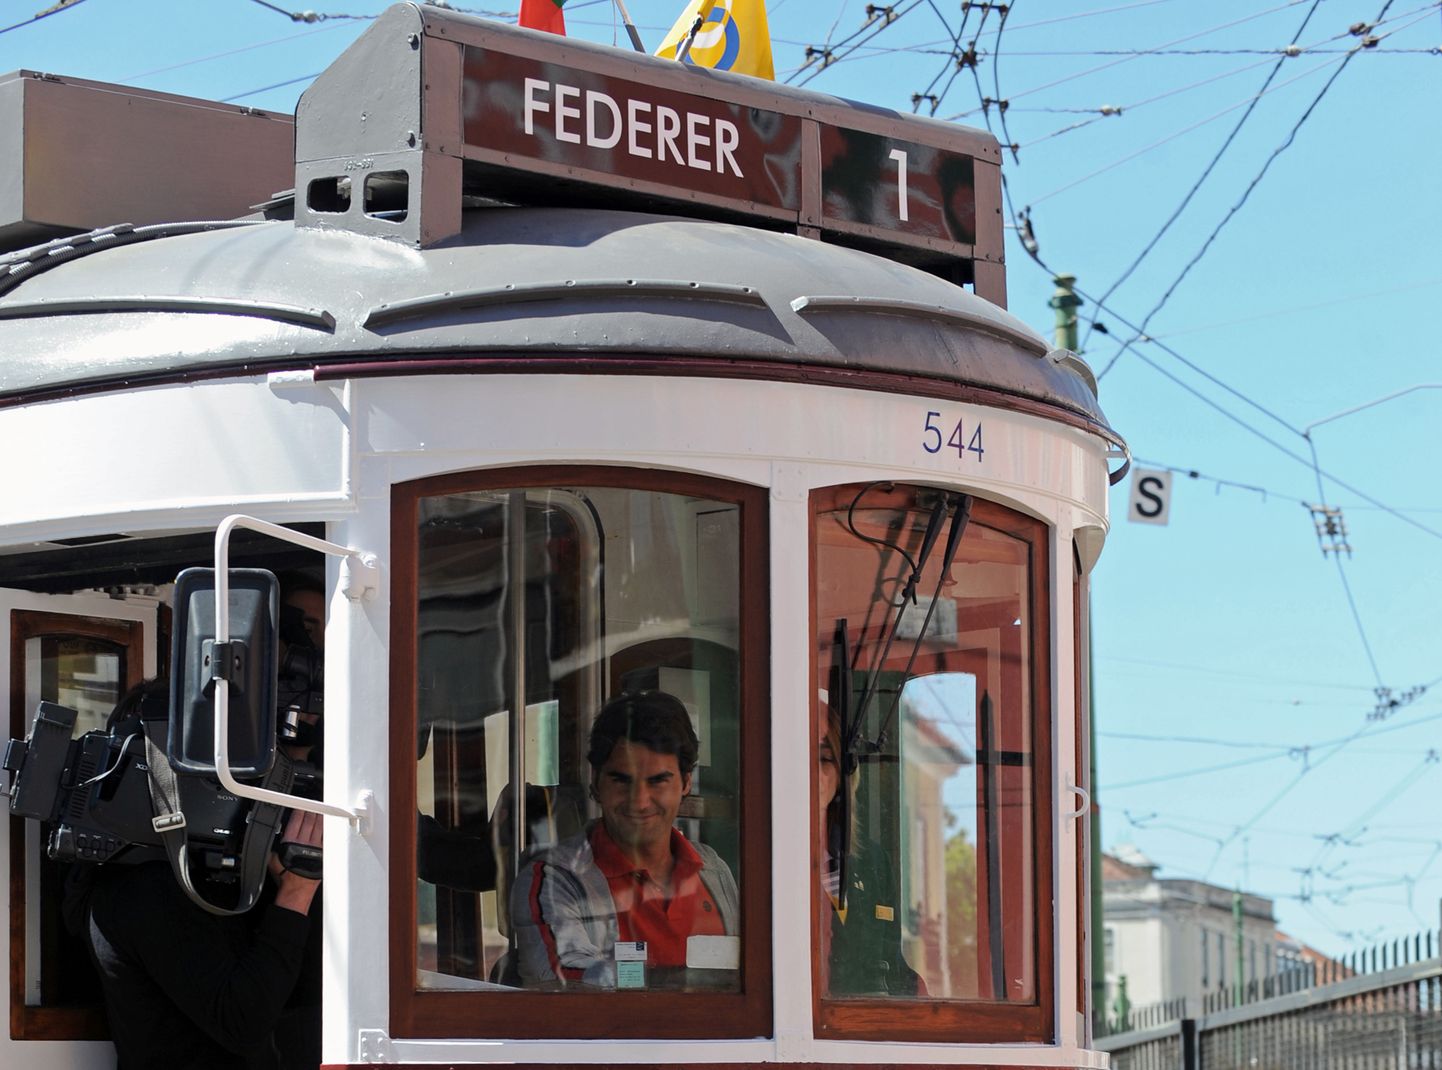 Foto aastast 2010, mis näitab, et Roger Federeri ühistranspordihuvi pole midagi liiga uut. Tõsi, trammiga sõitis ta Estorili turniiri reklaamklipi tarbeks.